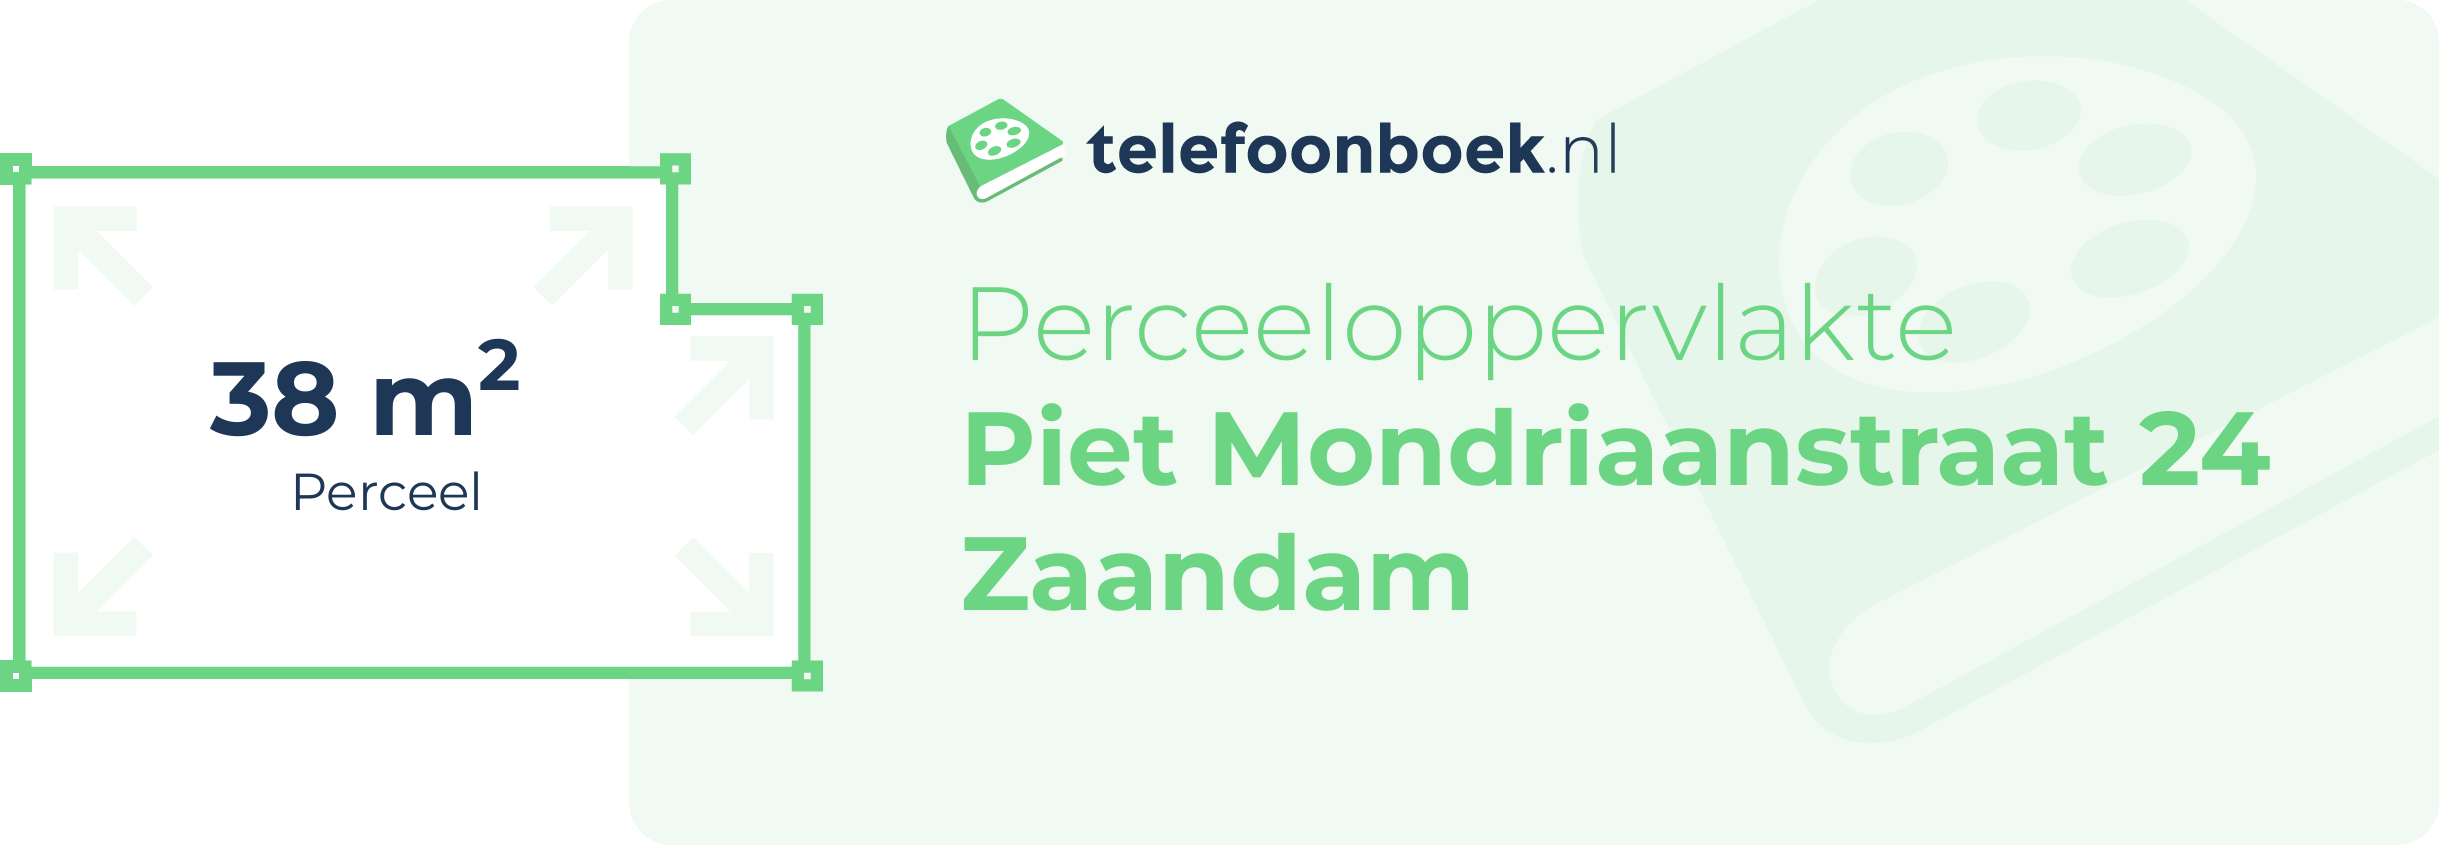 Perceeloppervlakte Piet Mondriaanstraat 24 Zaandam